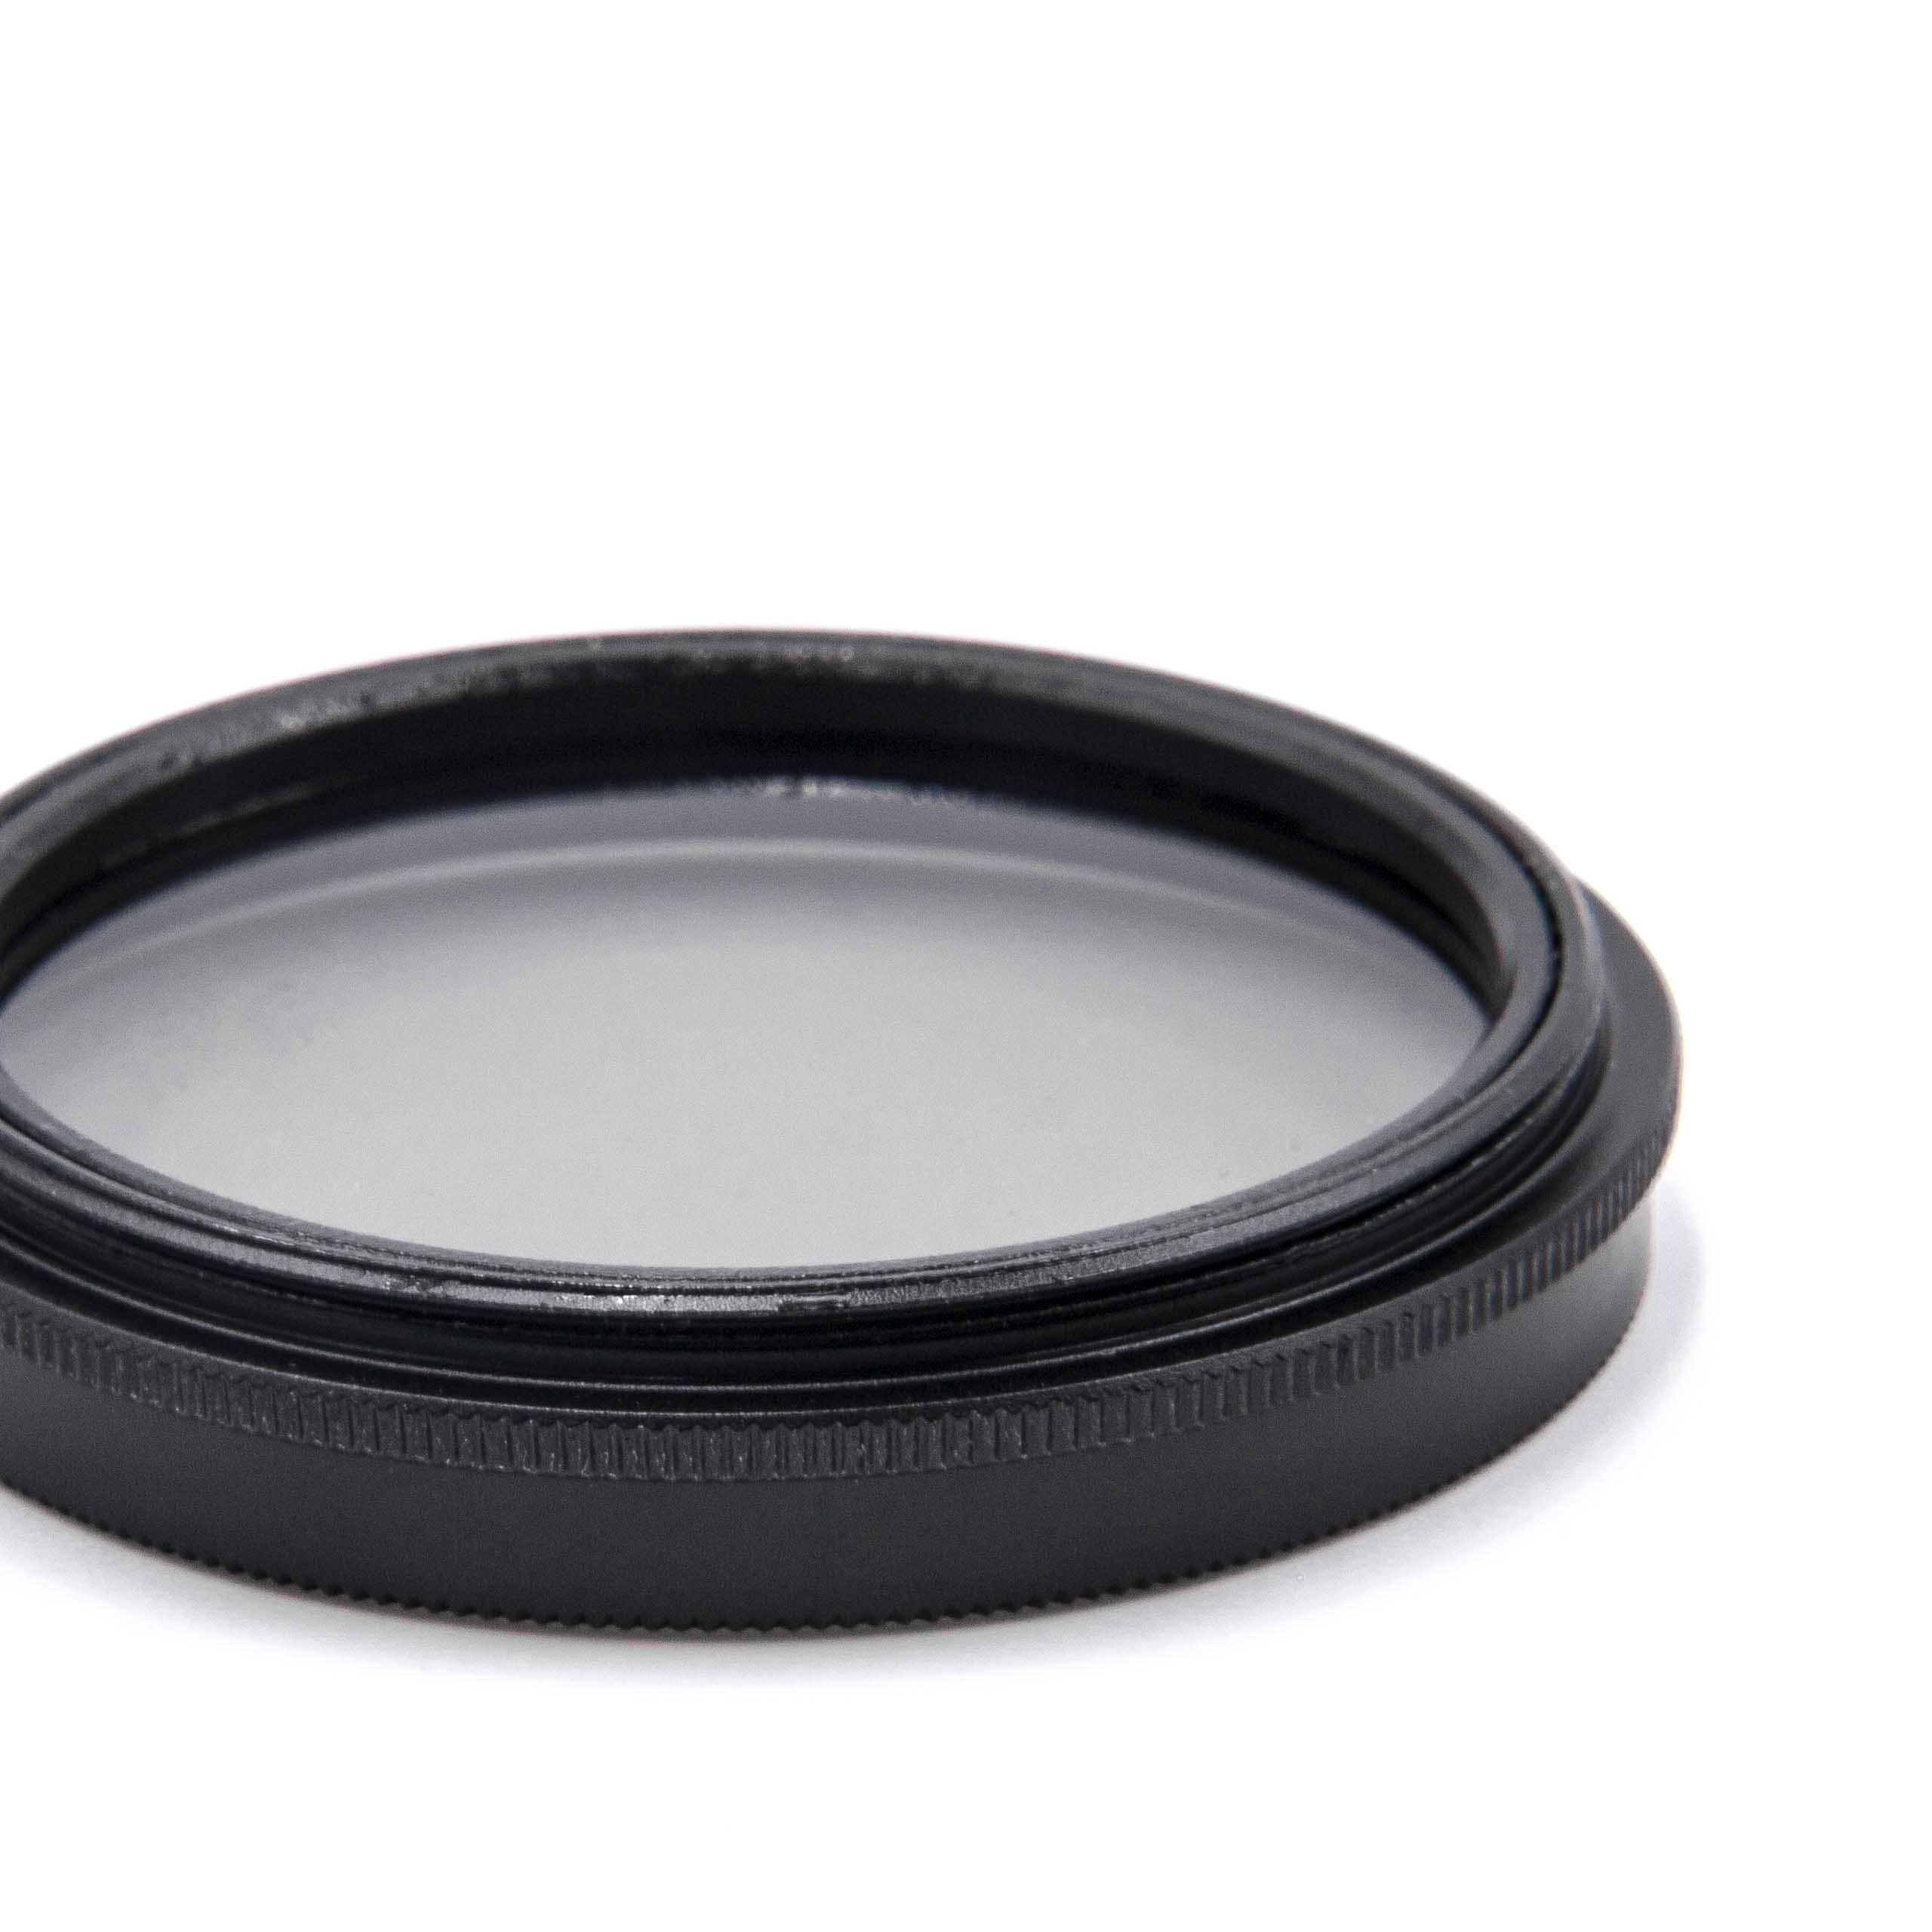 Filtro polarizador para objetivos y cámaras con rosca de filtro de 39 mm - Filtro CPL